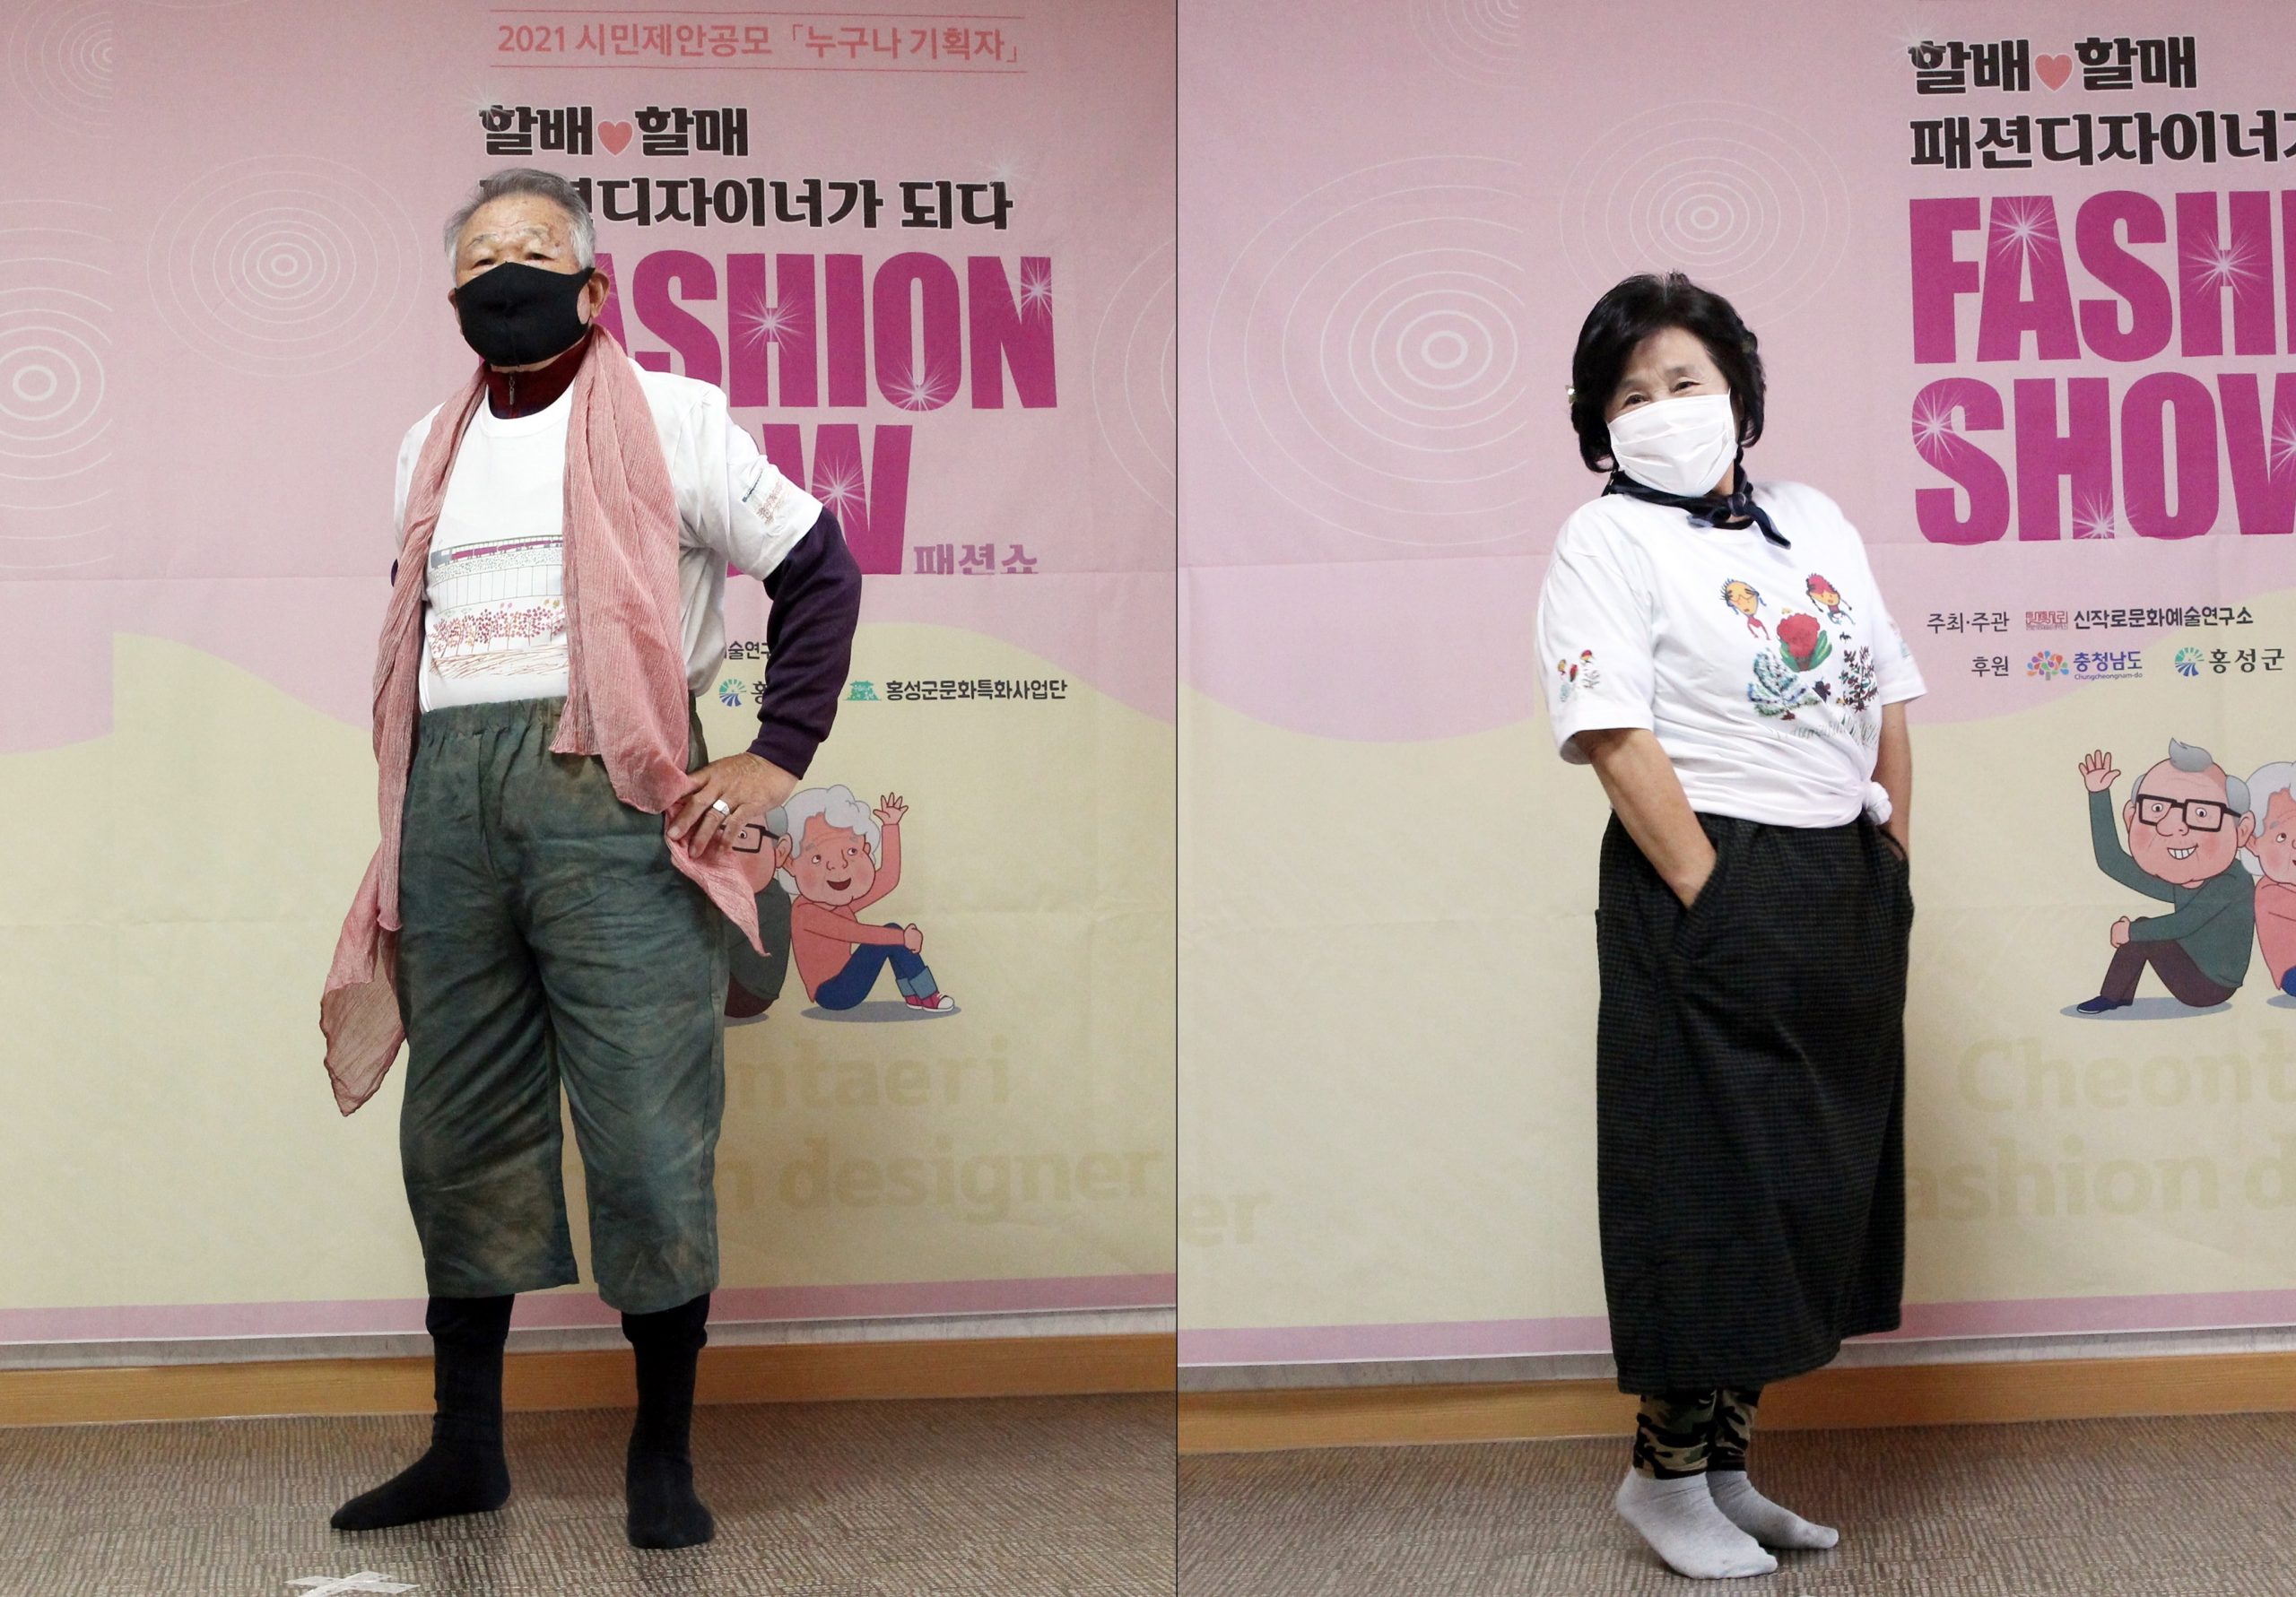 拚图两图∕乐龄人士服装秀SOUTH KOREA FASHION:Fashion show at village in Hongseong